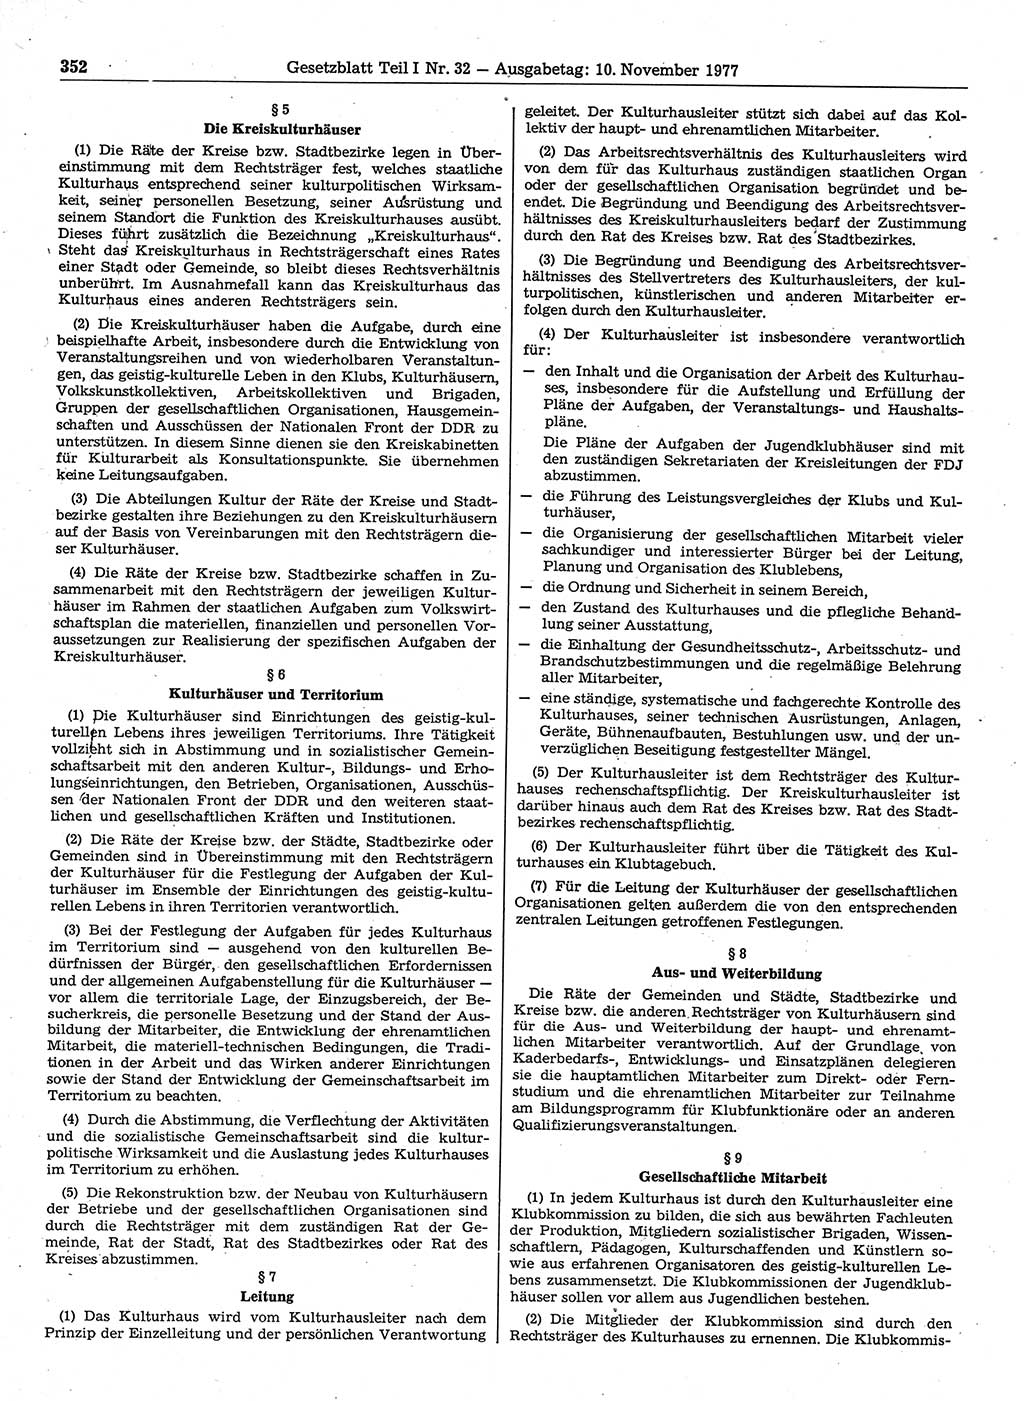 Gesetzblatt (GBl.) der Deutschen Demokratischen Republik (DDR) Teil Ⅰ 1977, Seite 352 (GBl. DDR Ⅰ 1977, S. 352)